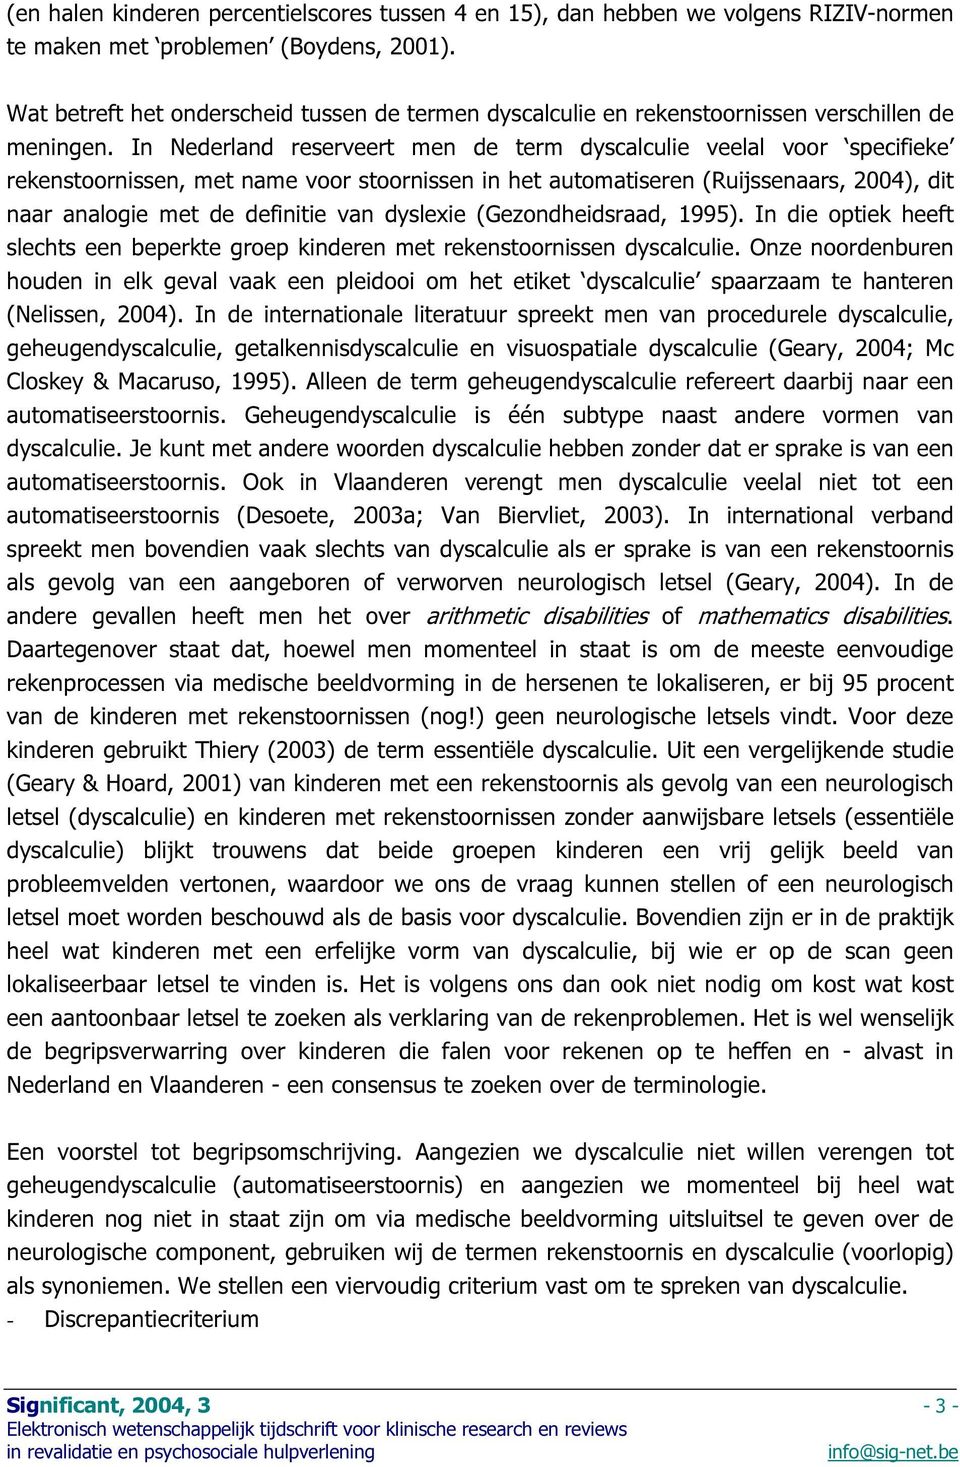 In Nederland reserveert men de term dyscalculie veelal voor specifieke rekenstoornissen, met name voor stoornissen in het automatiseren (Ruijssenaars, 2004), dit naar analogie met de definitie van